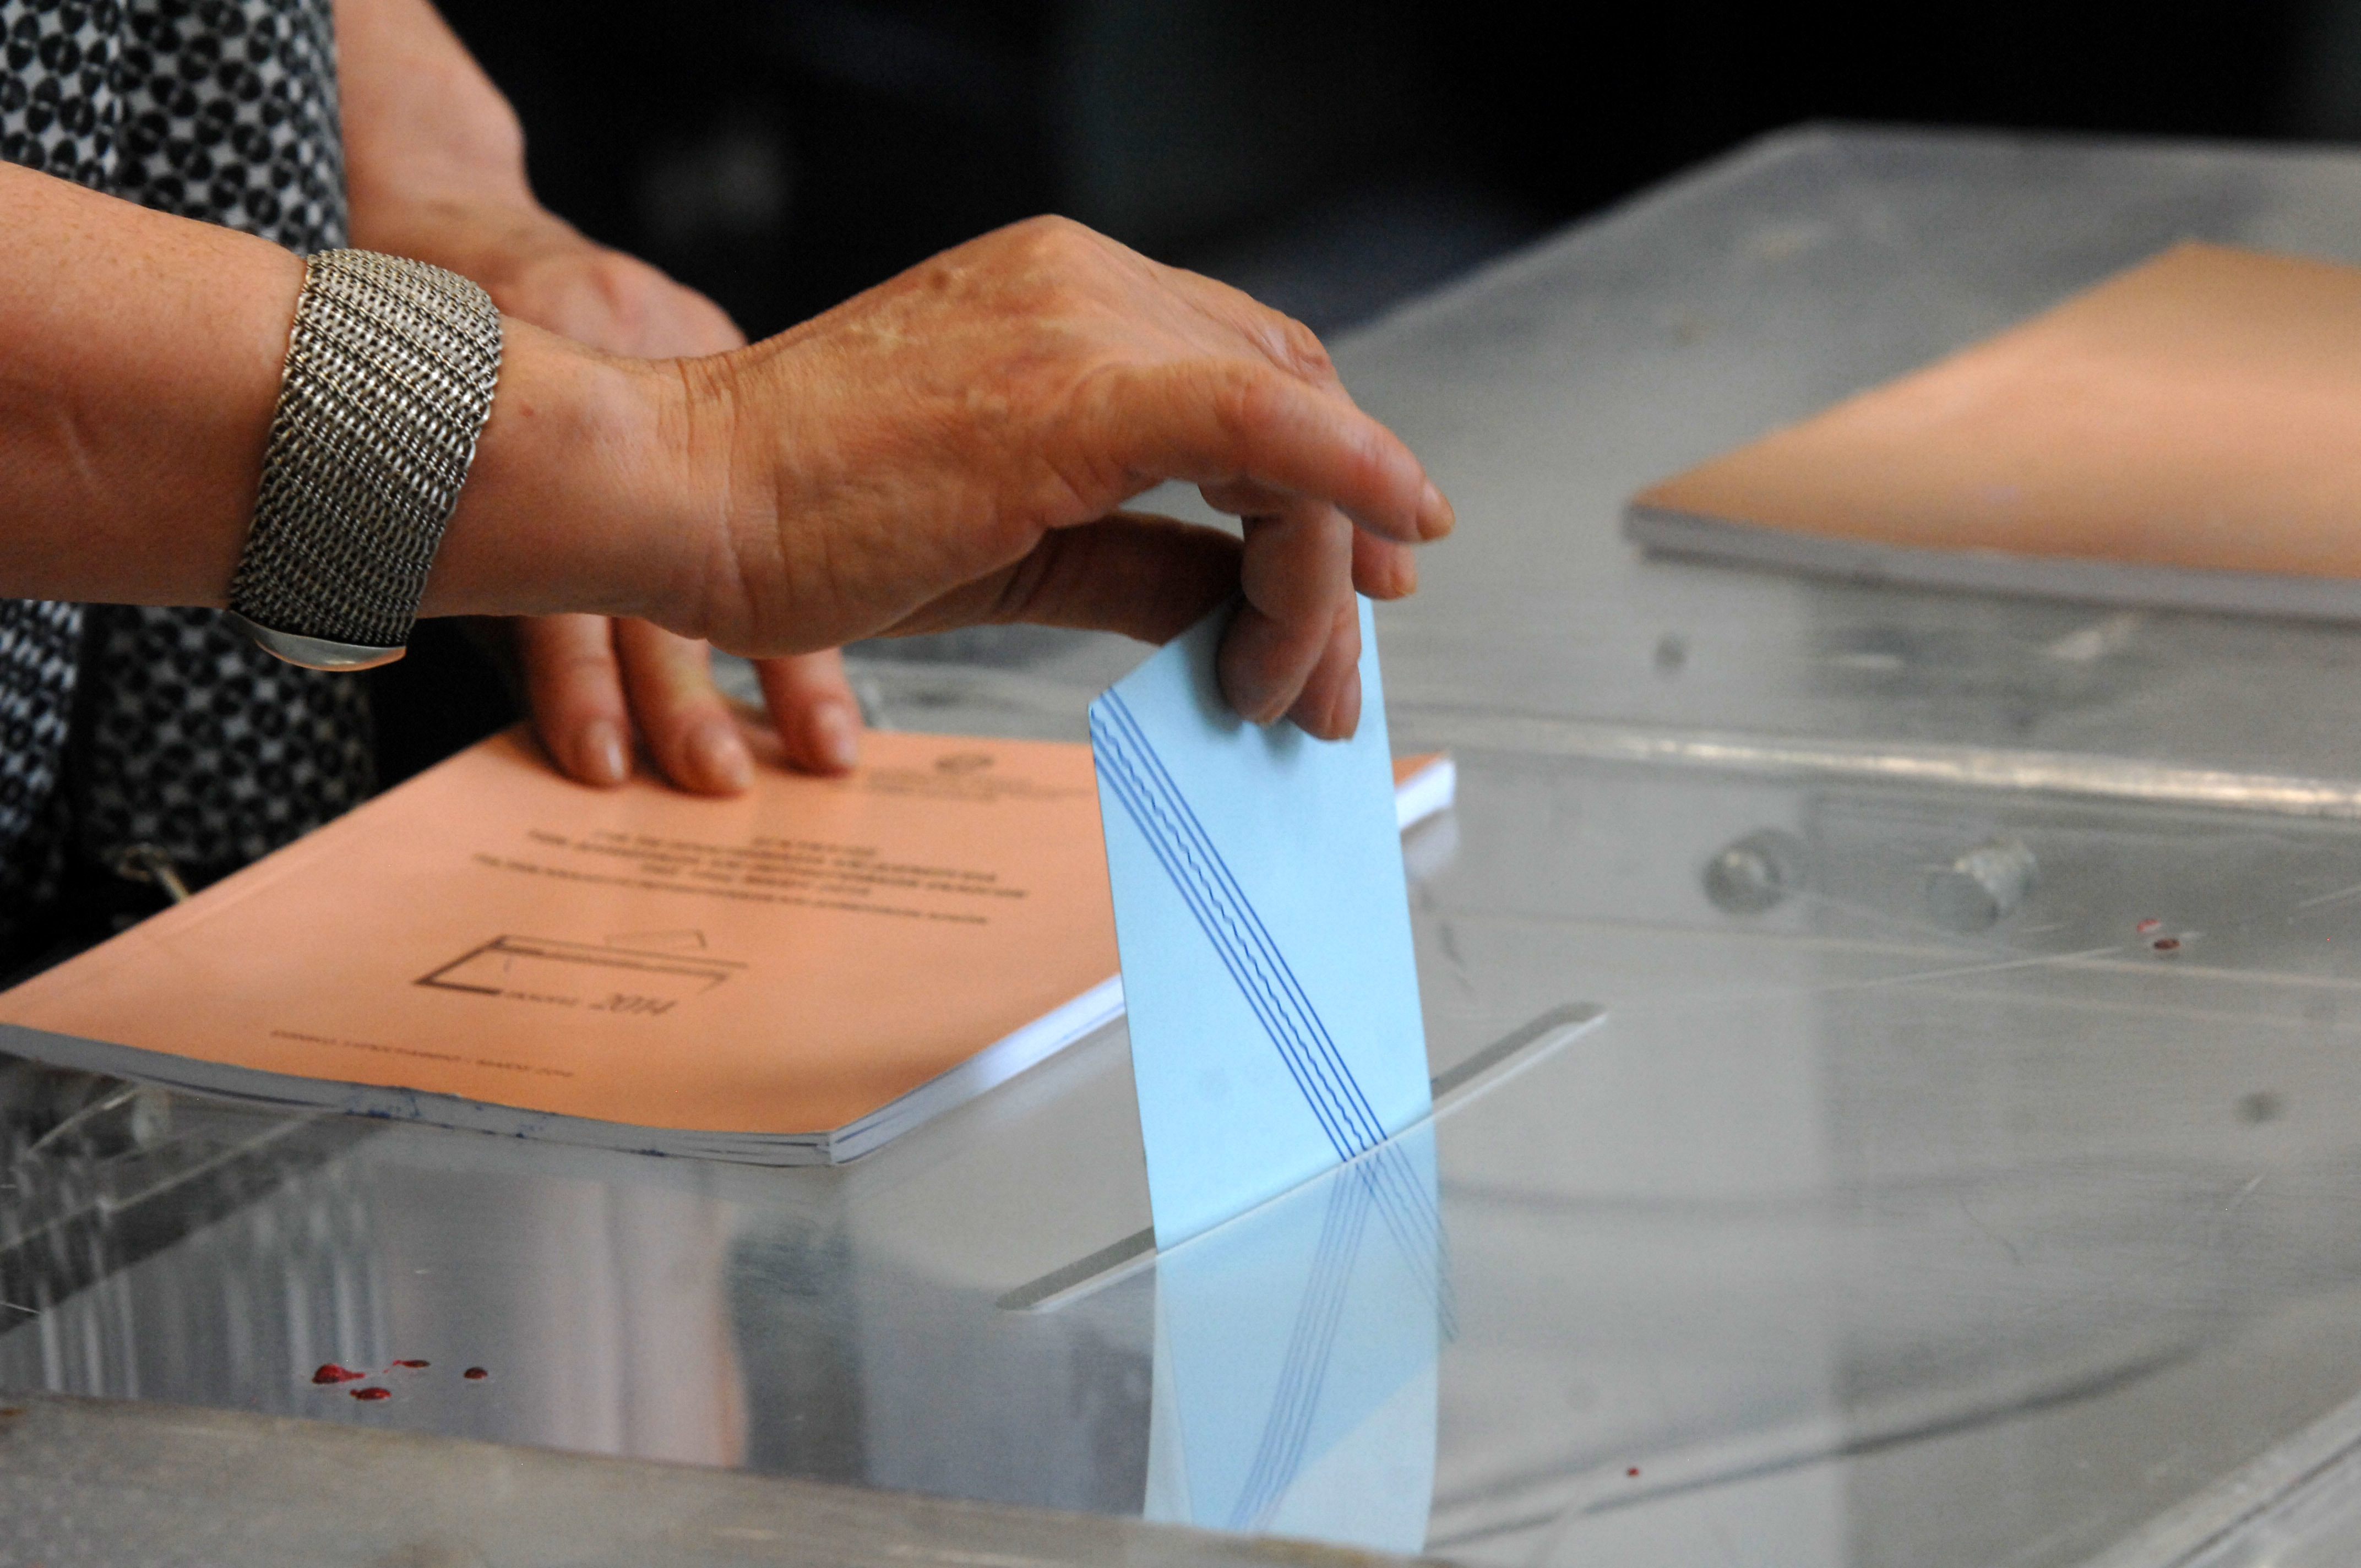 Μειώθηκε η συμμετοχή στο β’ γύρο των δημοτικών και περιφερειακών εκλογών